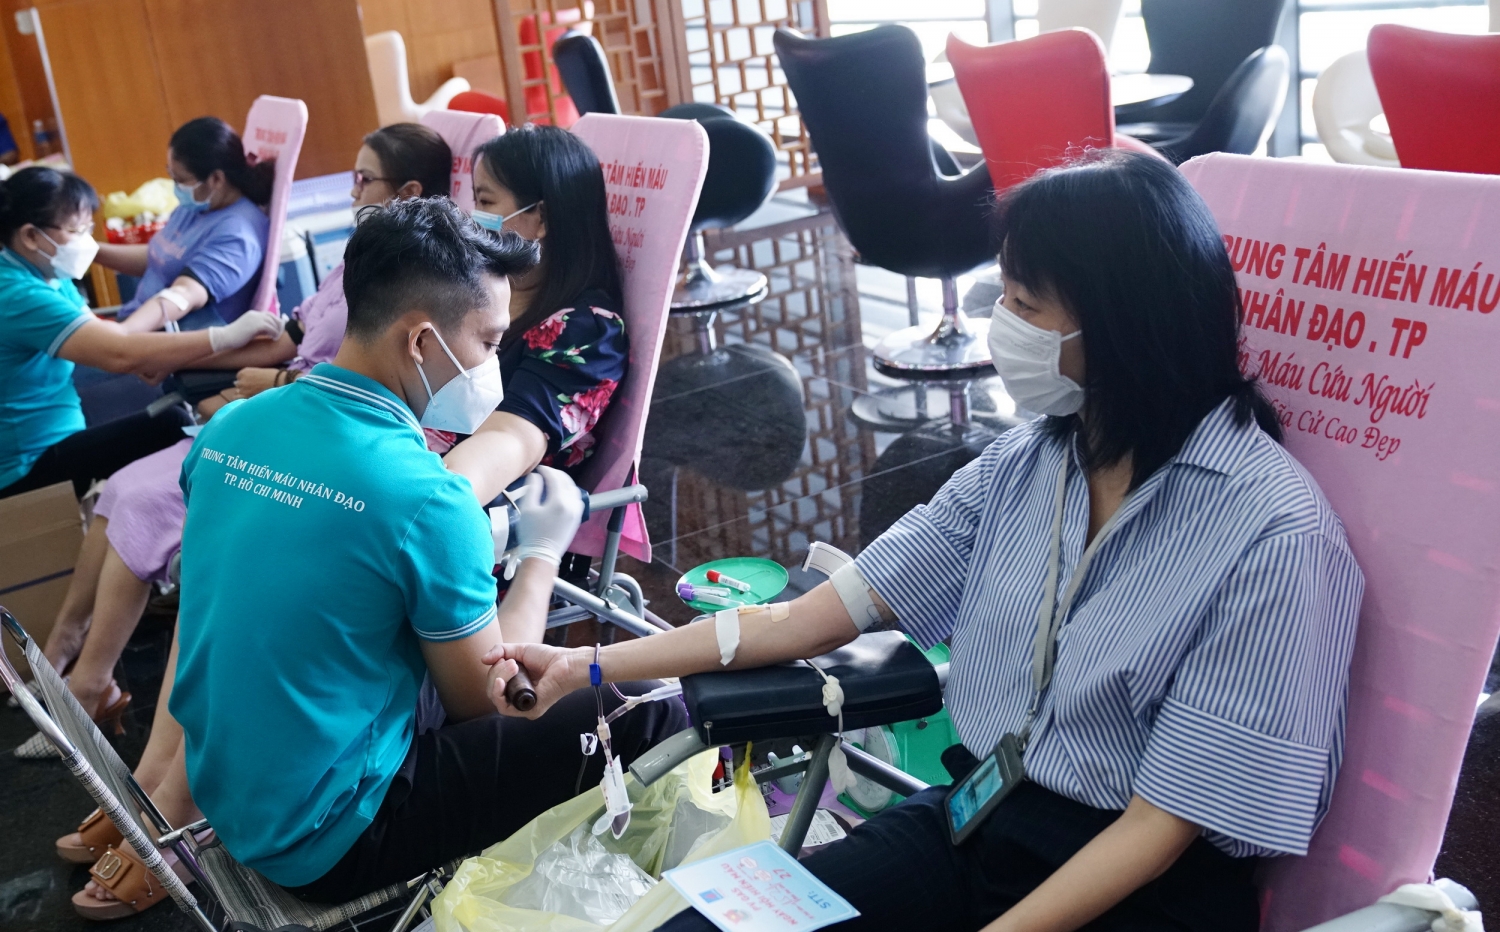 Ngày hội đã nhận được 101 đơn vị máu từ các tình nguyện viên